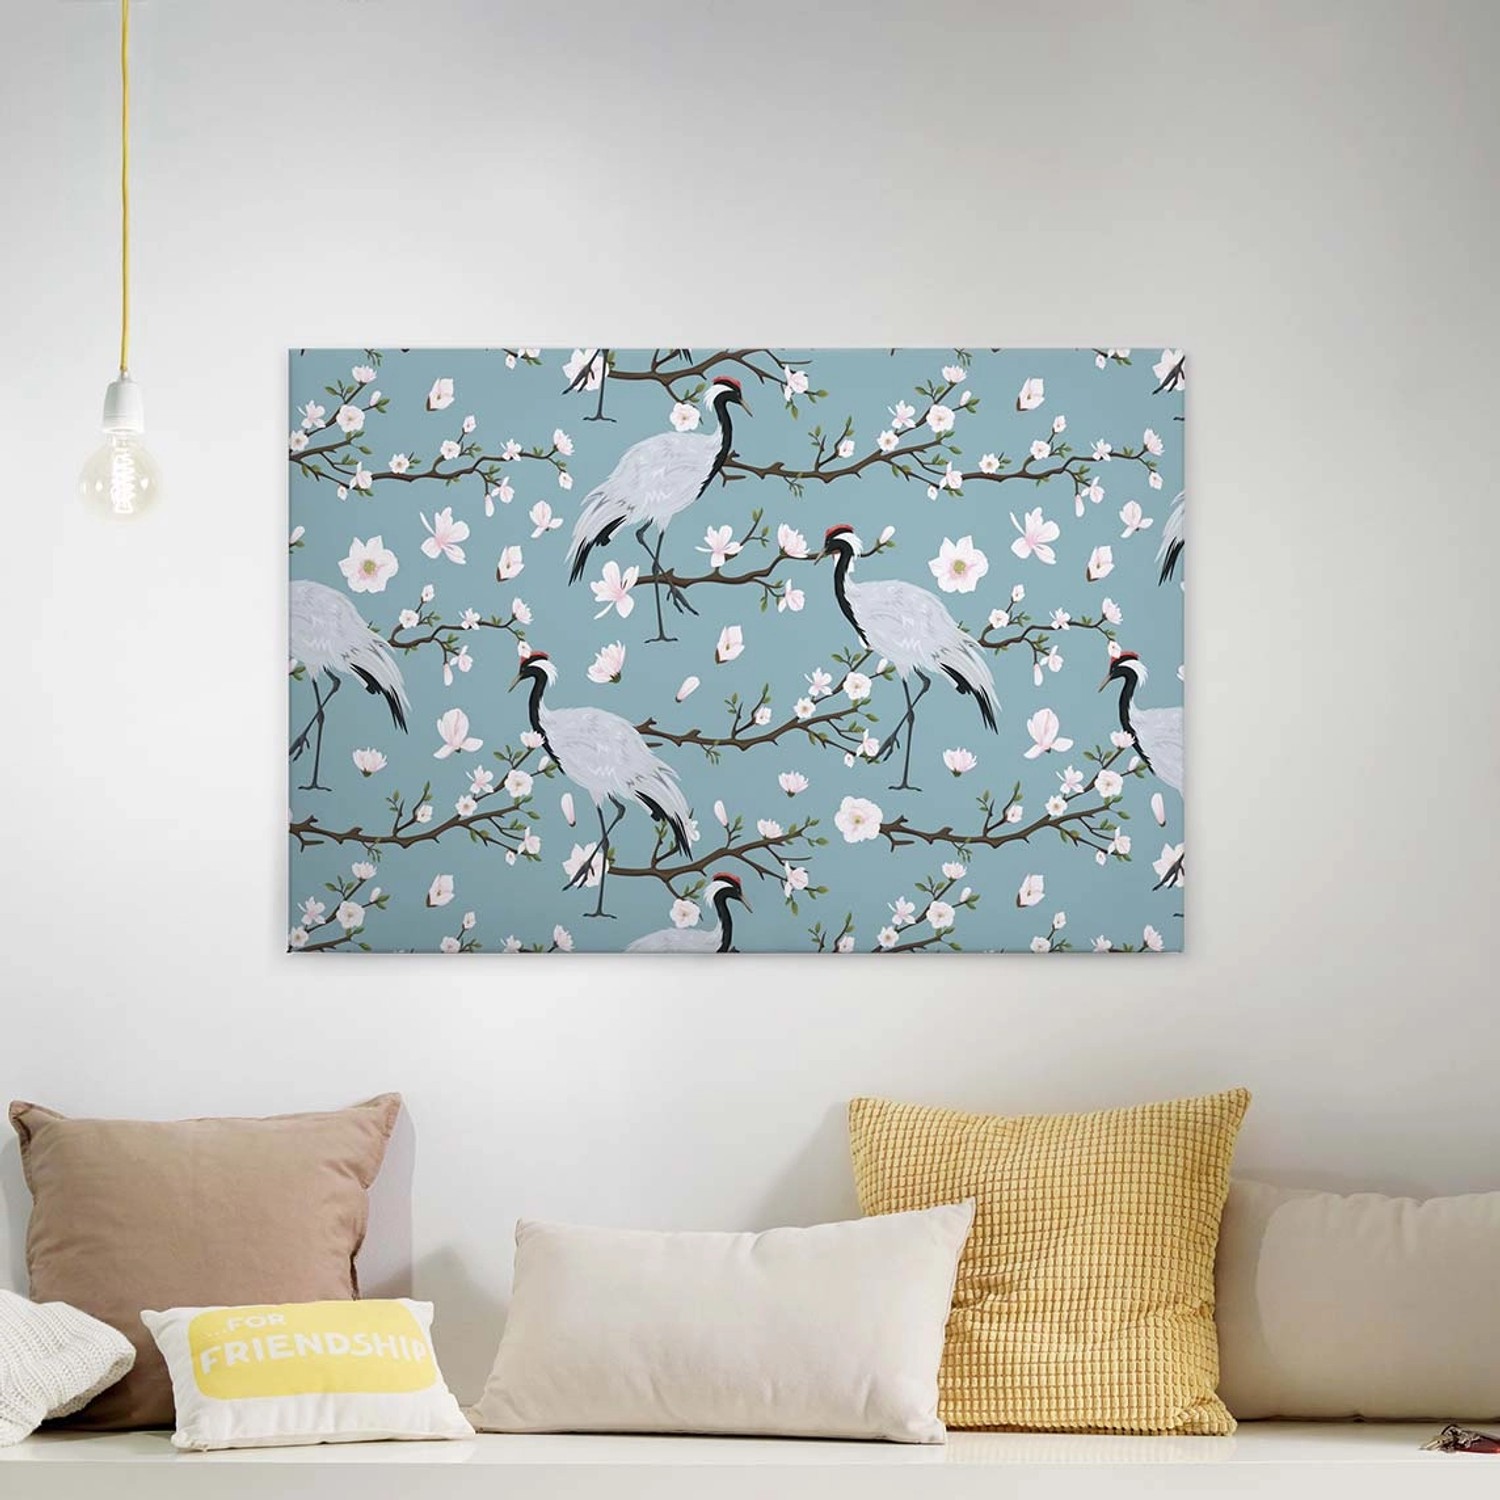 Bricoflor Leinwandbild Mit Kranich Wandbild Mit Vogel Und Kirschblüten In Blau Und Weiß Schlafzimmer Canvas Keilrahmen B